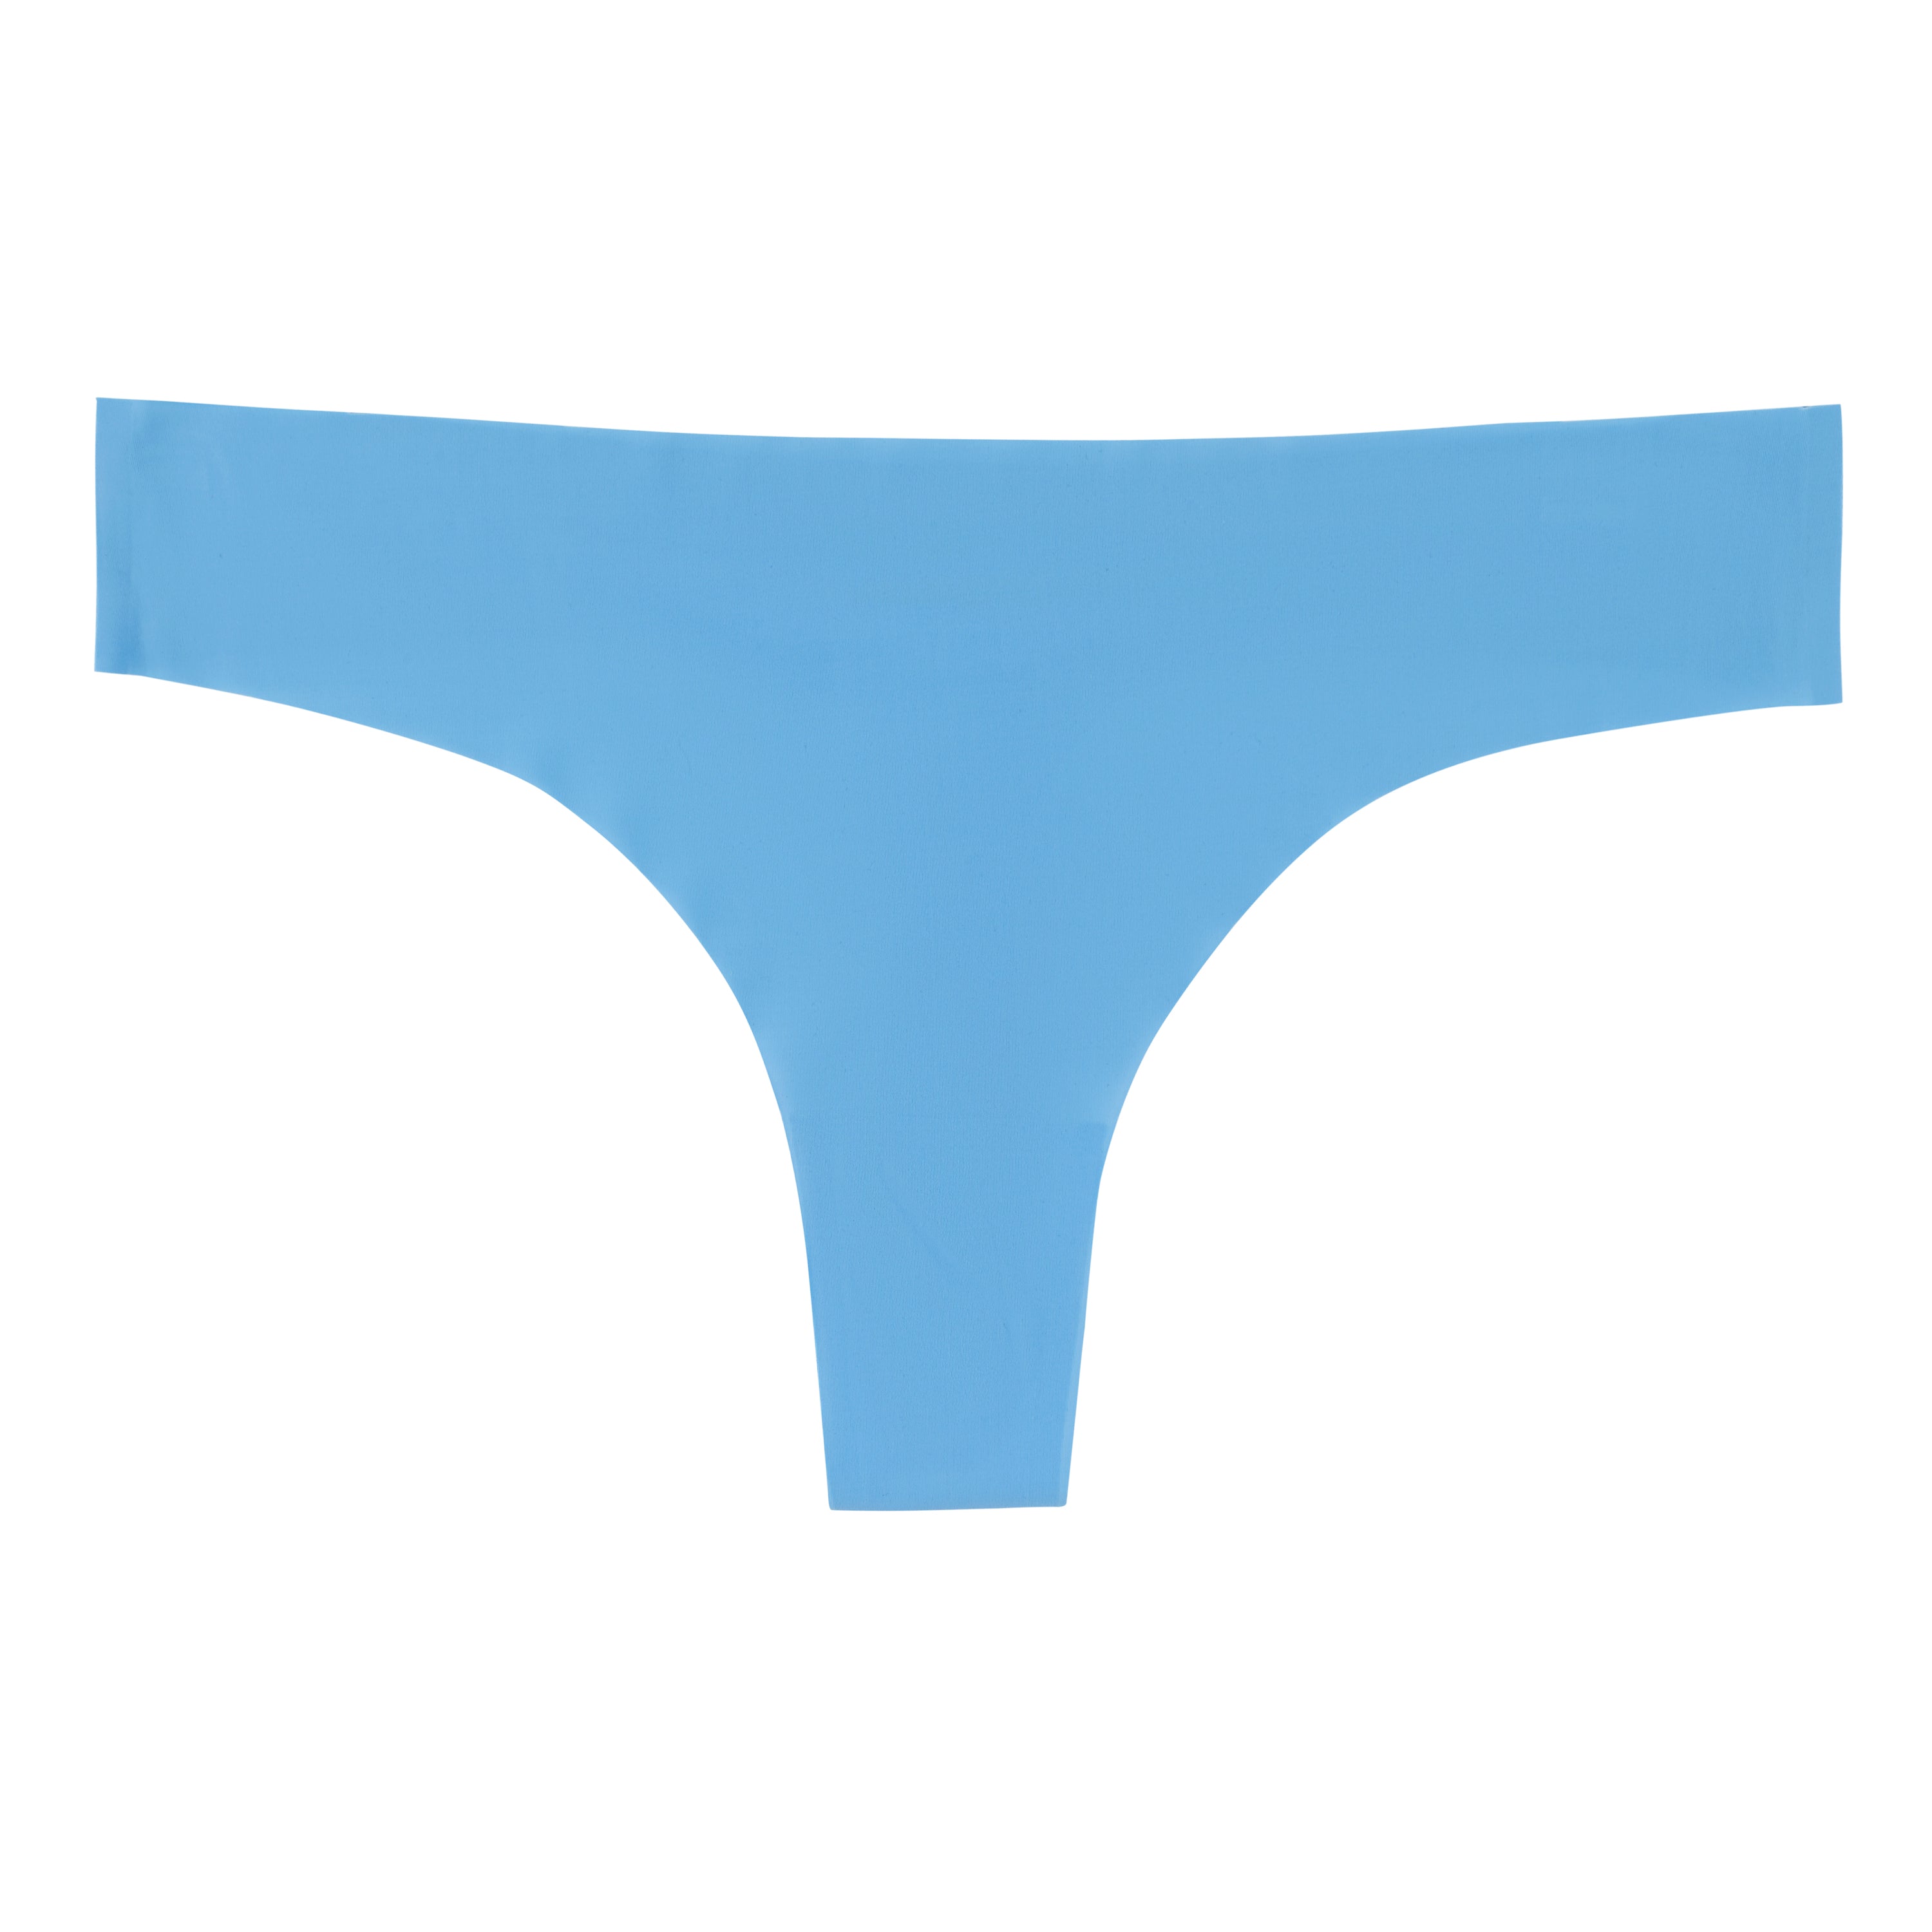 Free People Underwear Sale 2020: Uwila Warrior Thongs and Briefs